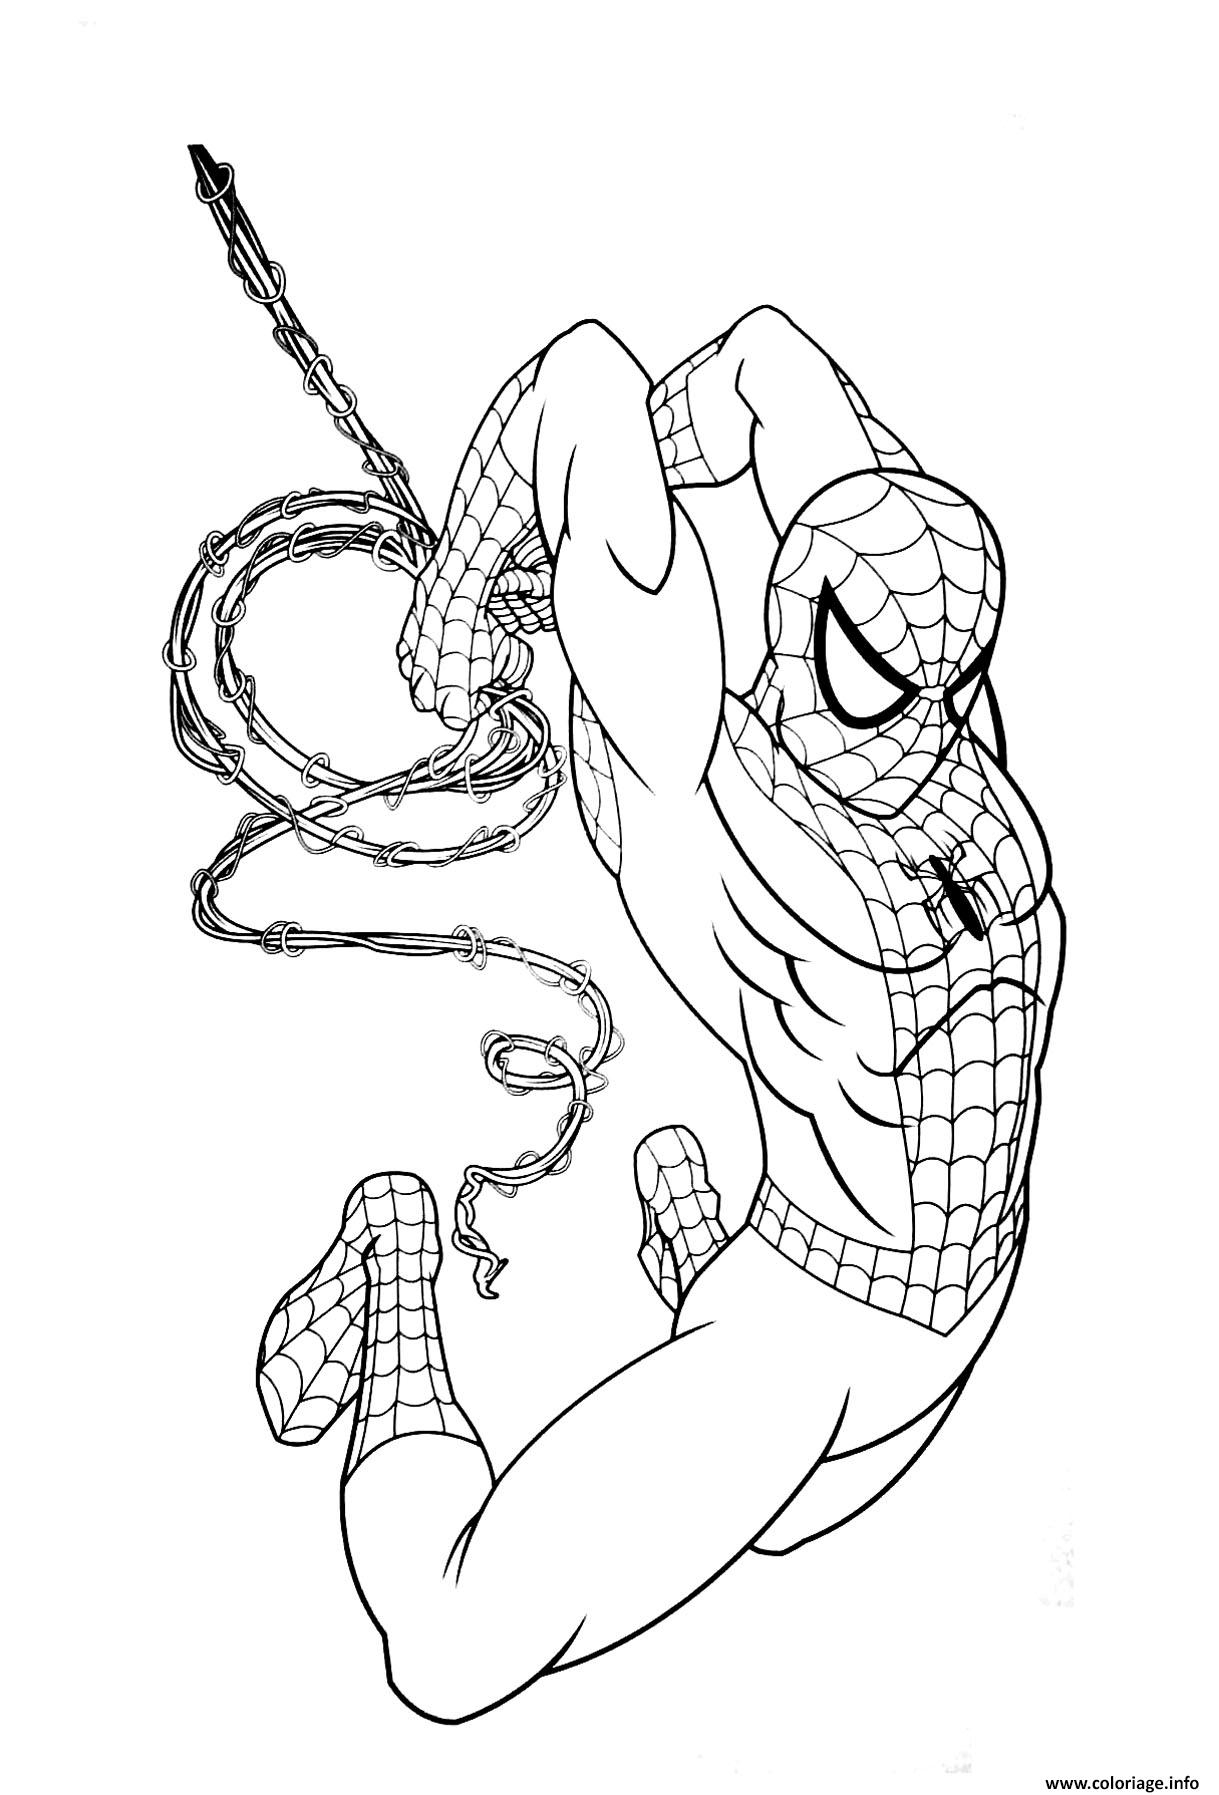 Coloriage Garcon Super Heros Marvel Spiderman Dessin Super dedans Coloriage De Super Heros 